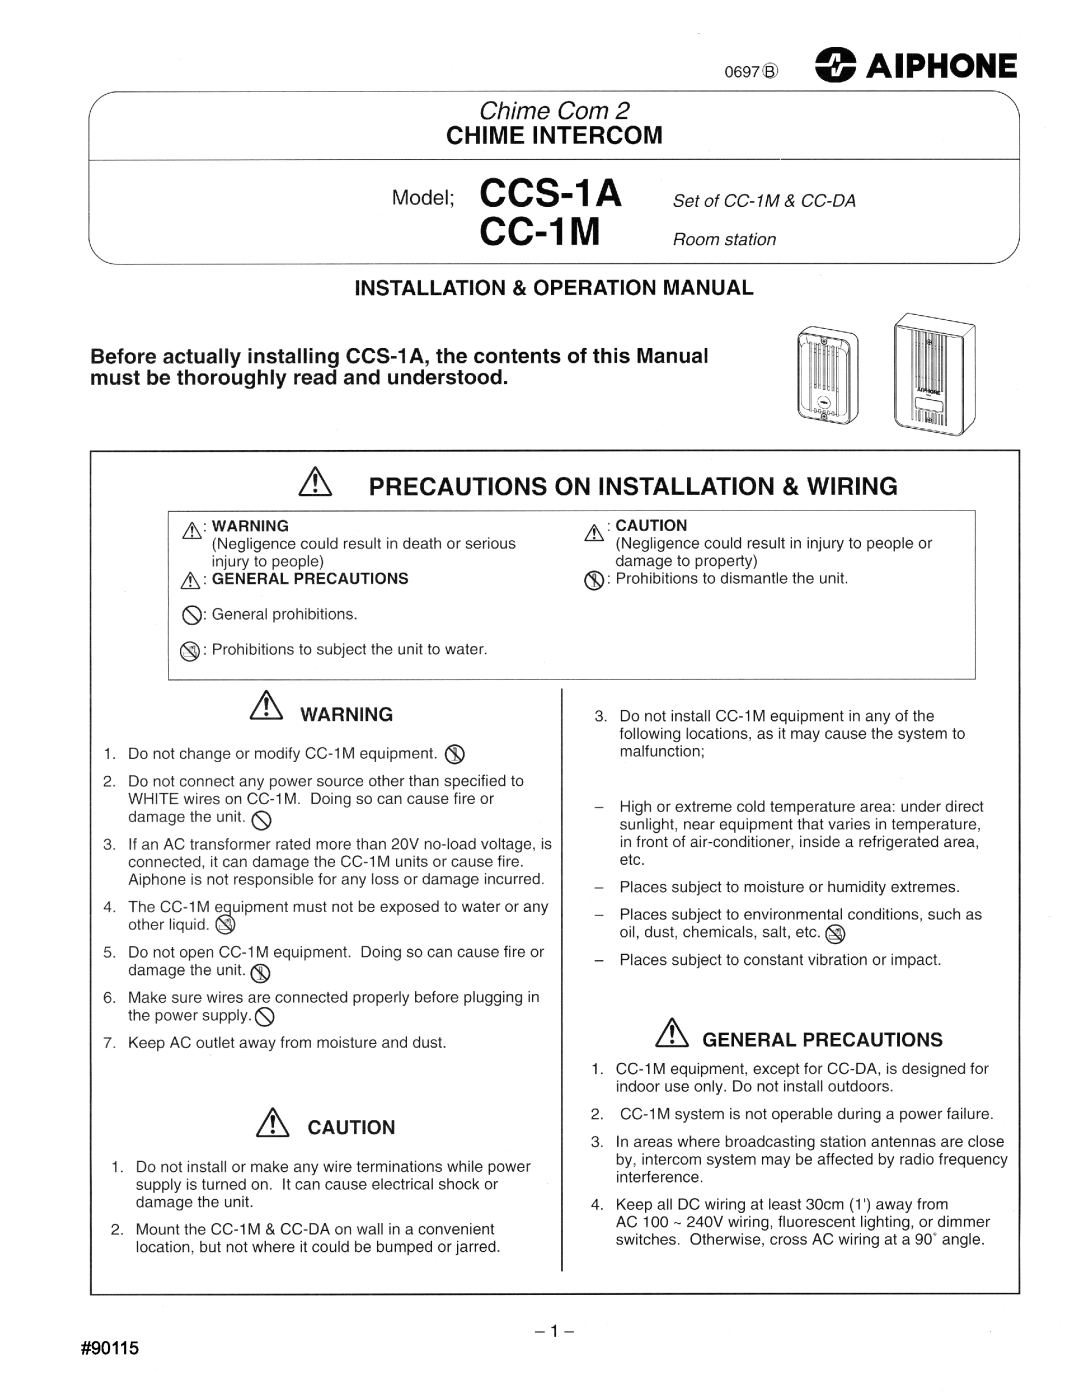 Aiphone CC-1M, Ccs 1a manual 